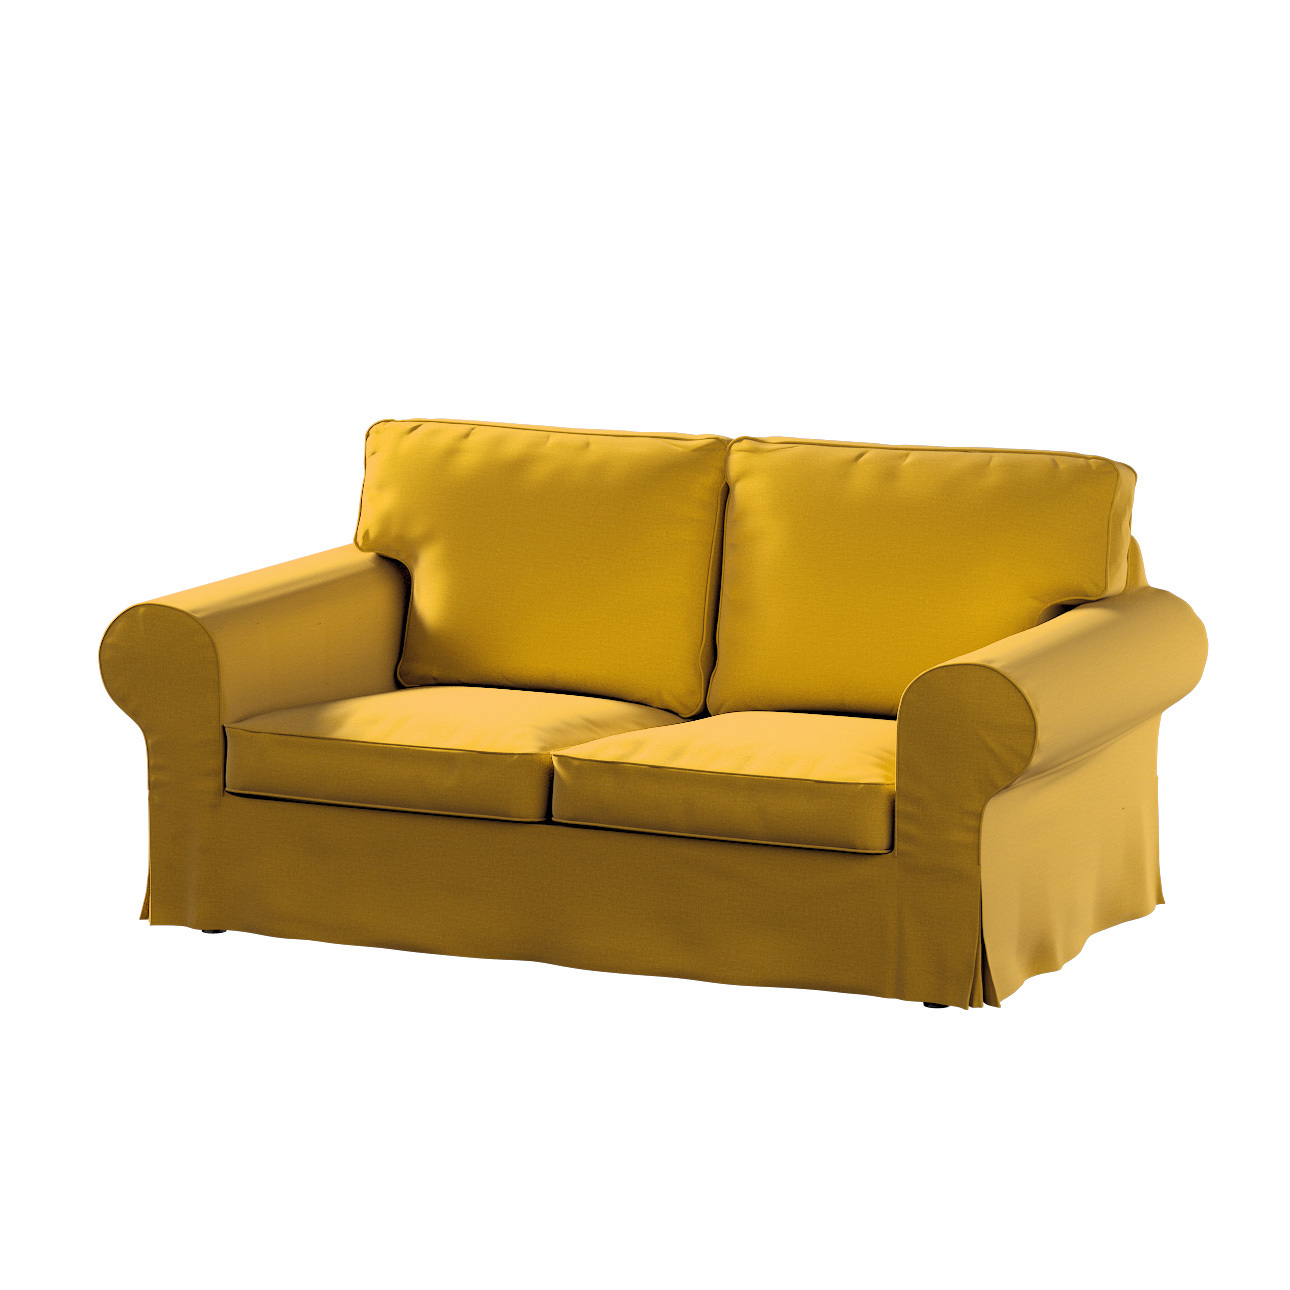 Bezug für Ektorp 2-Sitzer Sofa nicht ausklappbar, honiggelb, Sofabezug für günstig online kaufen